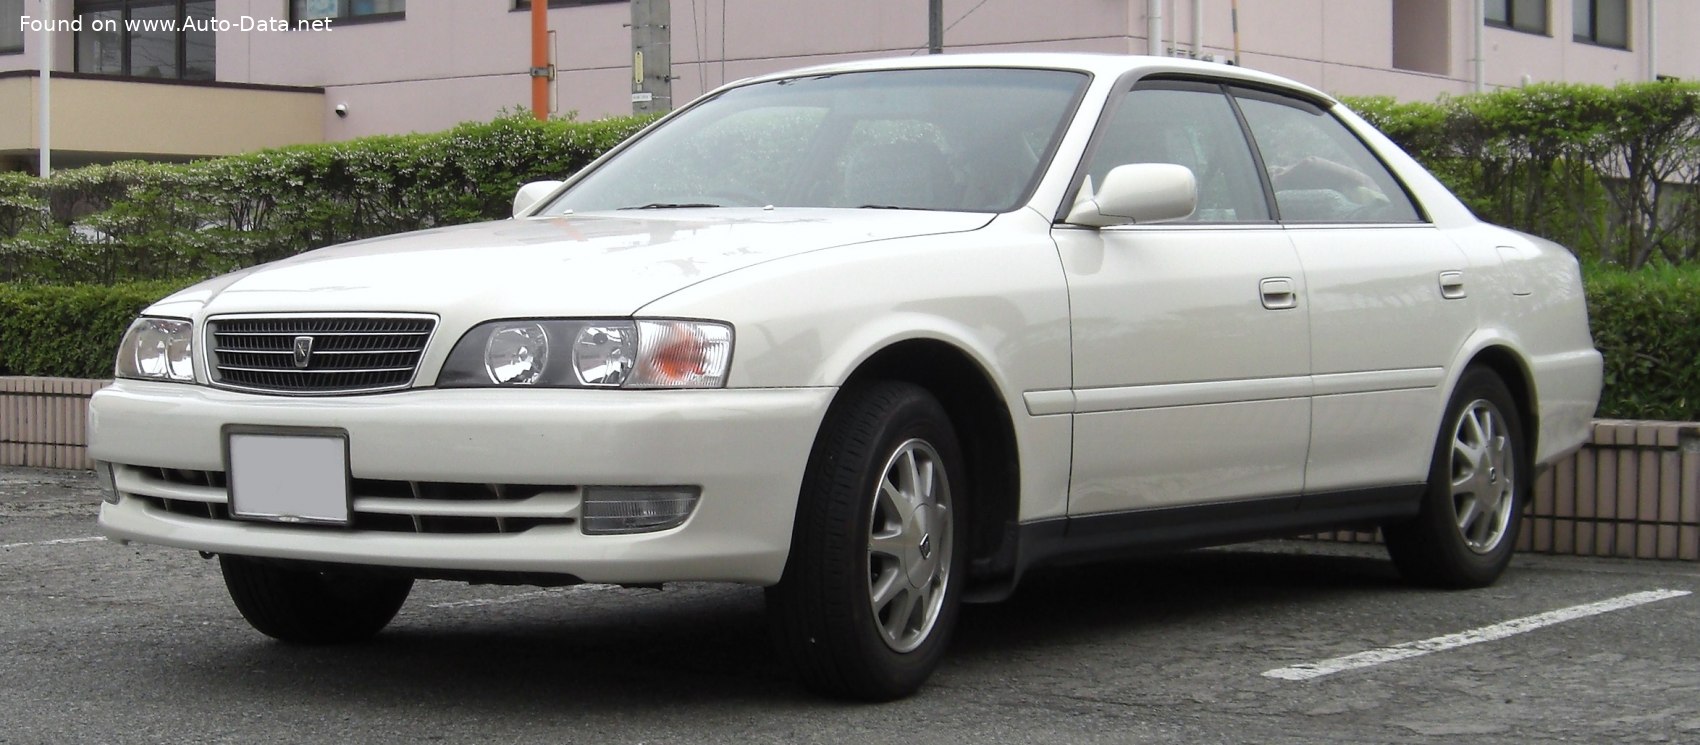 Toyota-Chaser-ZX-100.jpg